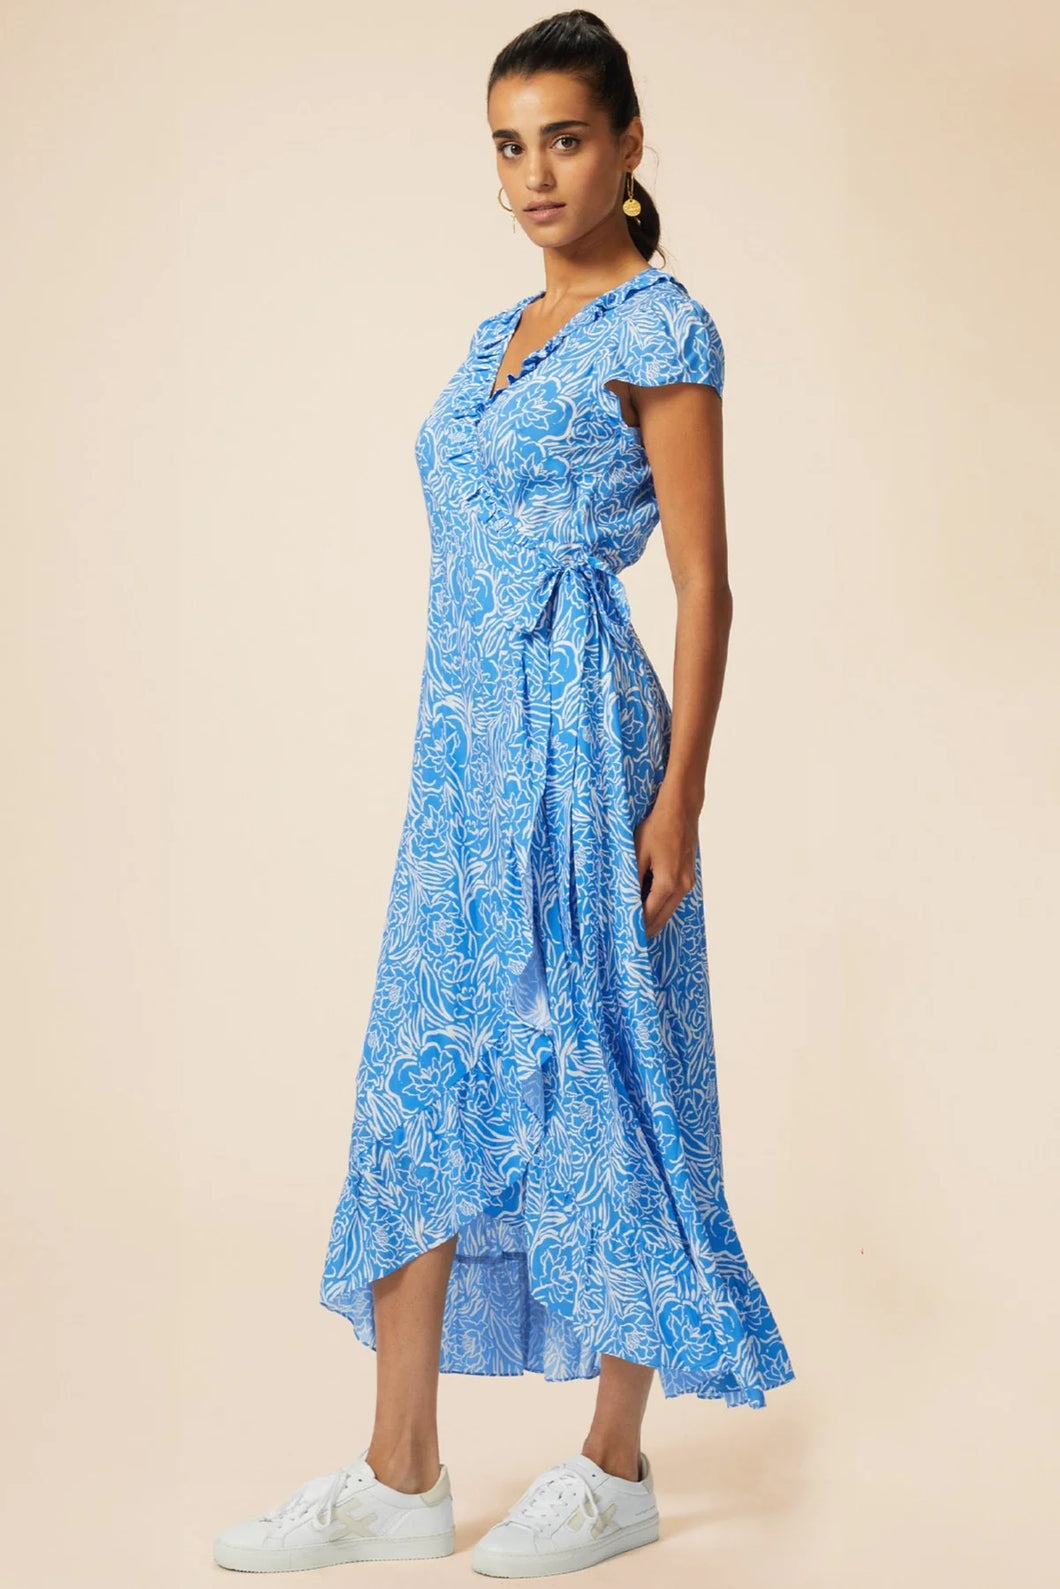 Aspiga Demi wrap Painted Floral print dress Blue/White